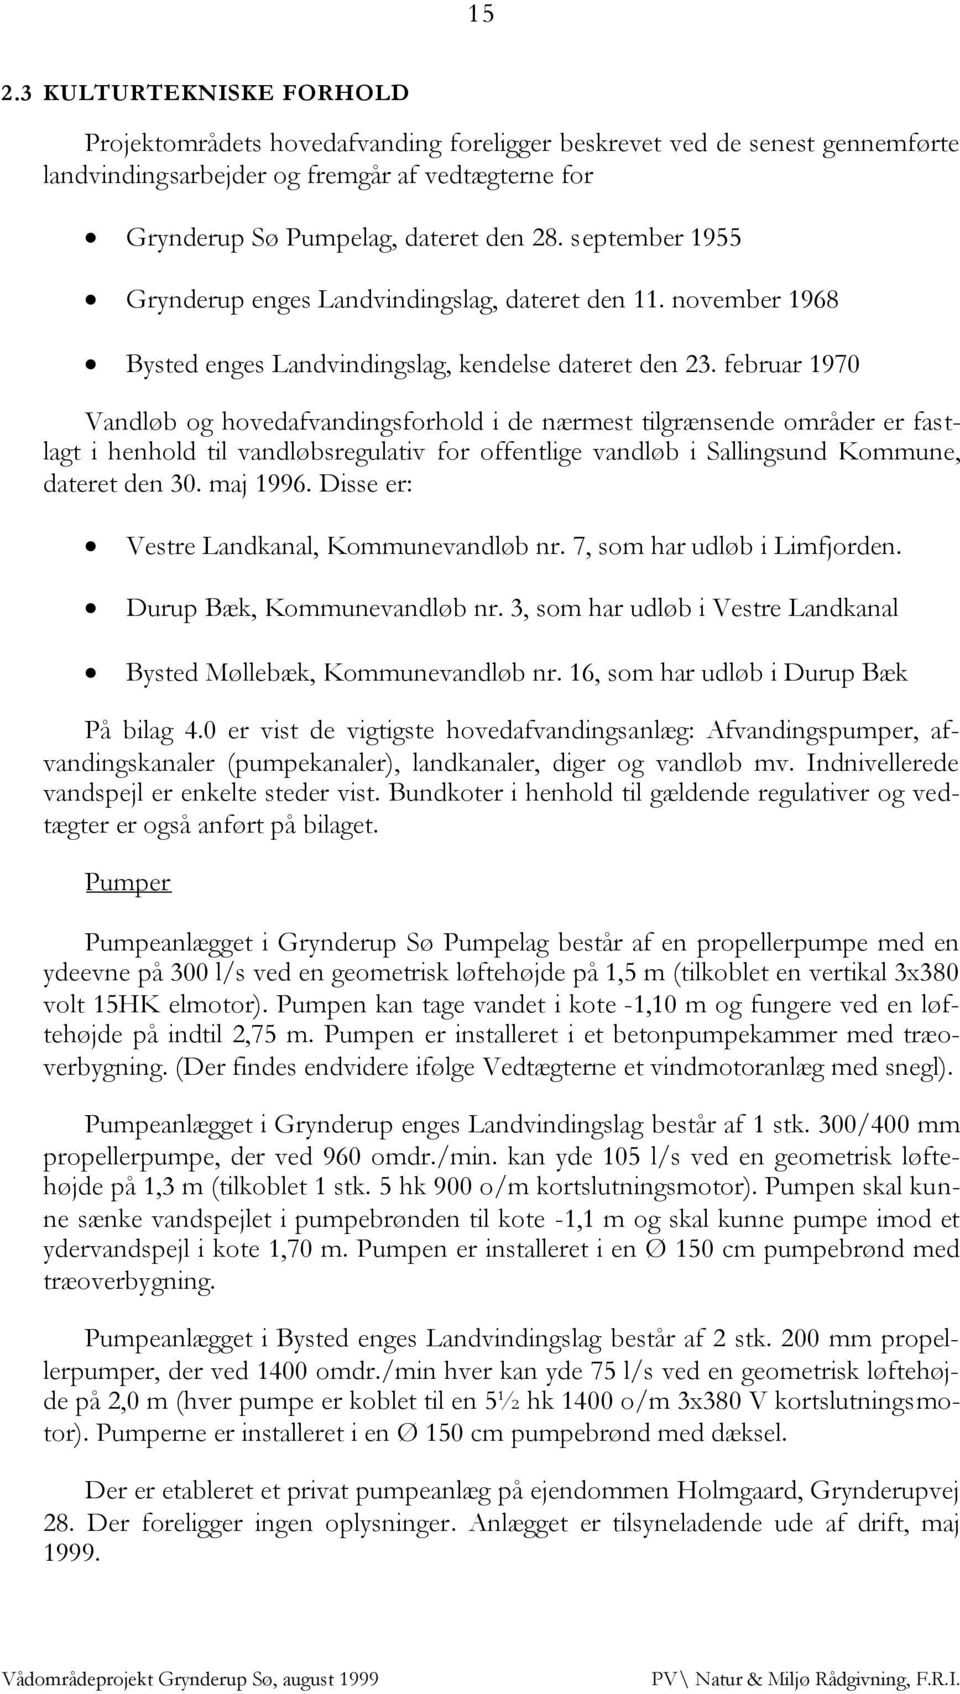 februar 1970 Vandløb og hovedafvandingsforhold i de nærmest tilgrænsende områder er fastlagt i henhold til vandløbsregulativ for offentlige vandløb i Sallingsund Kommune, dateret den 30. maj 1996.